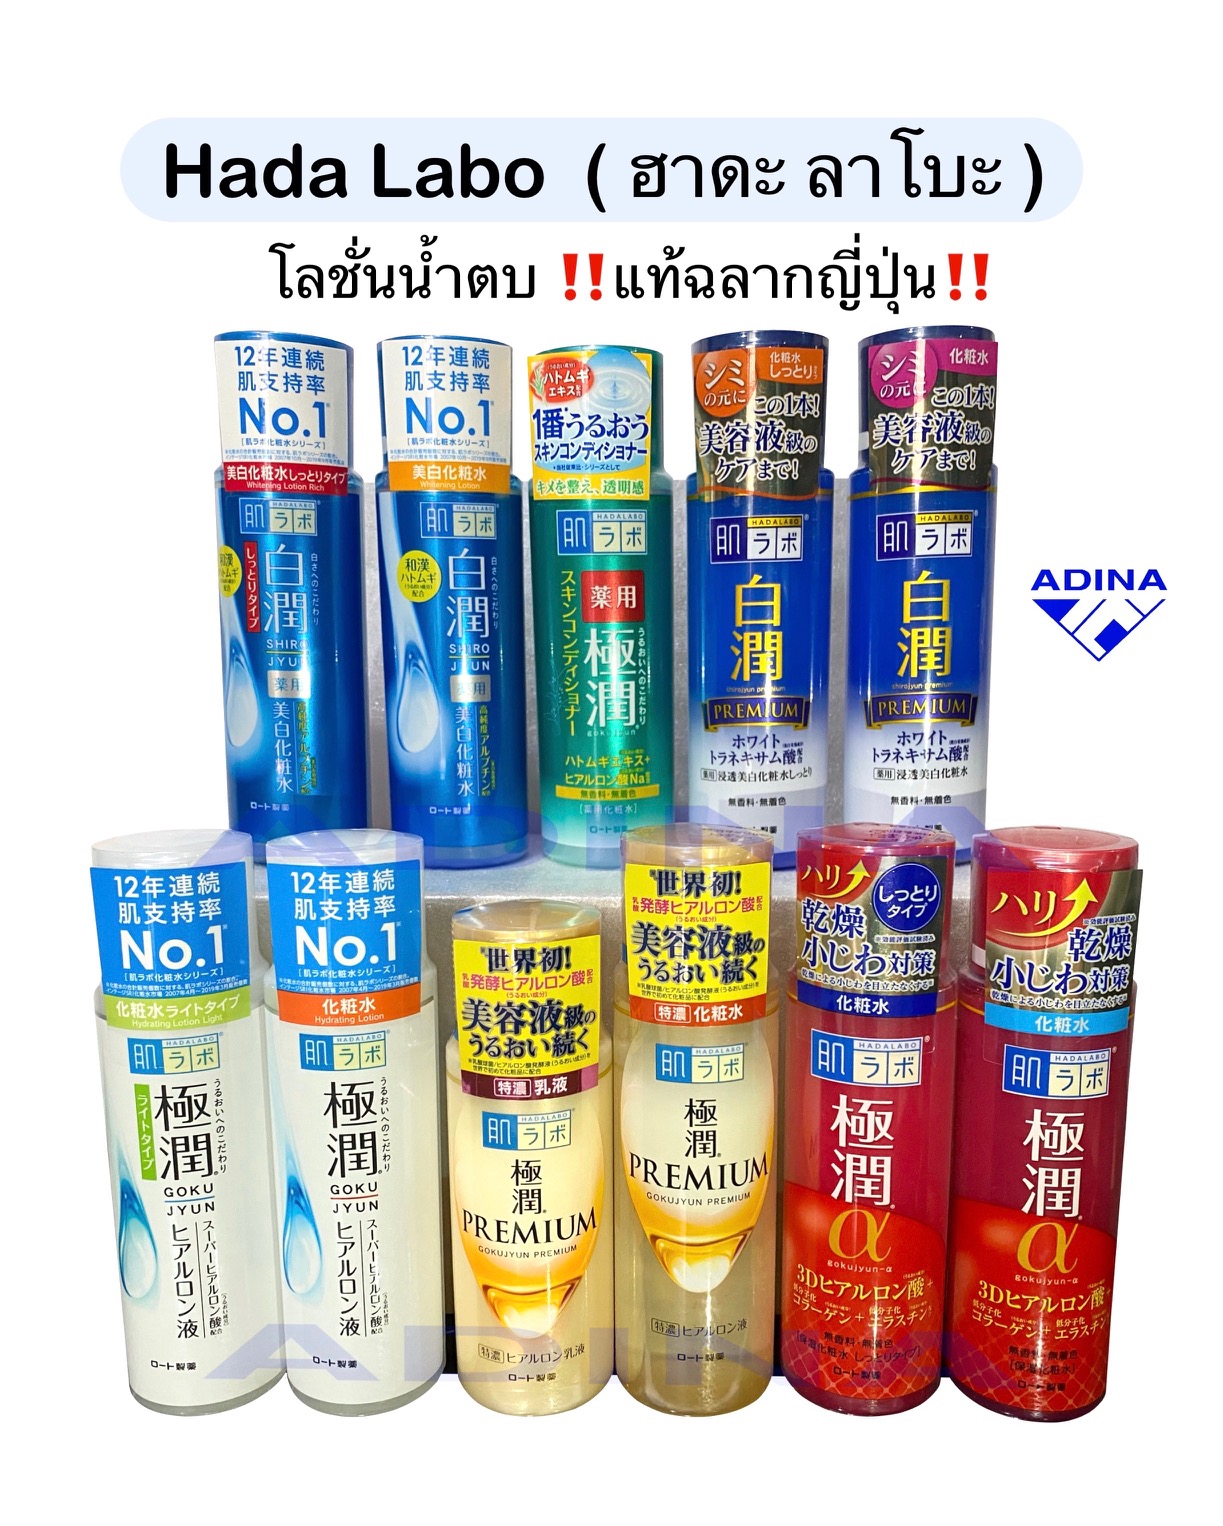 Hada Labo 170ml. ( ฮาดะ ลาโบะ ) โลชั่นน้ำตบฉลากญี่ปุ่นแท้100%